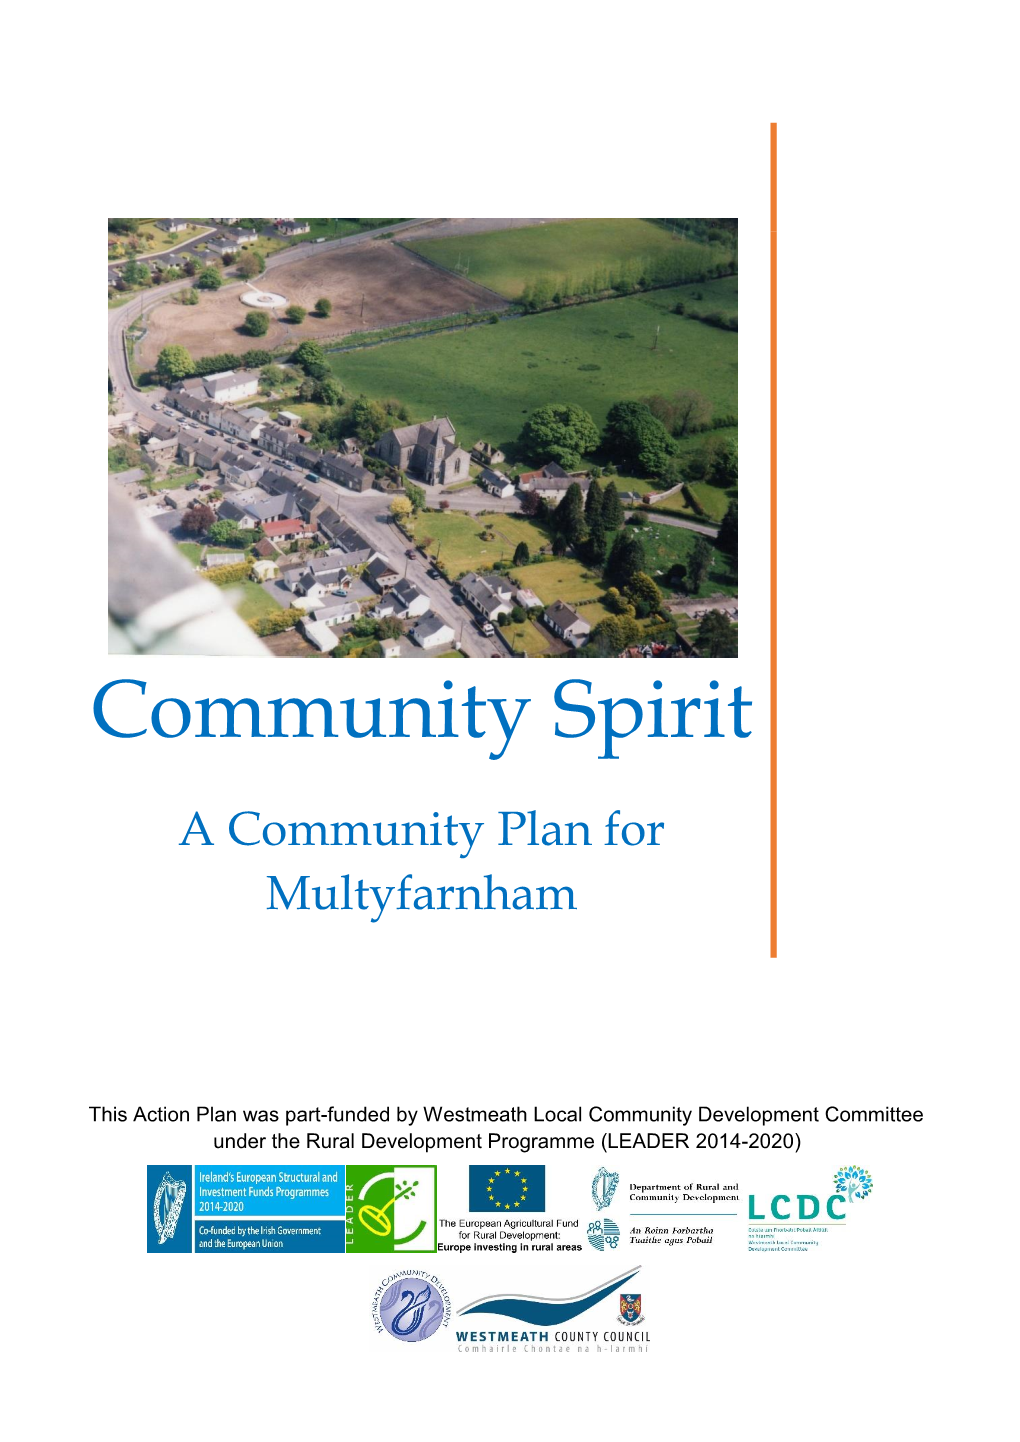 A Community Plan for Multyfarnham